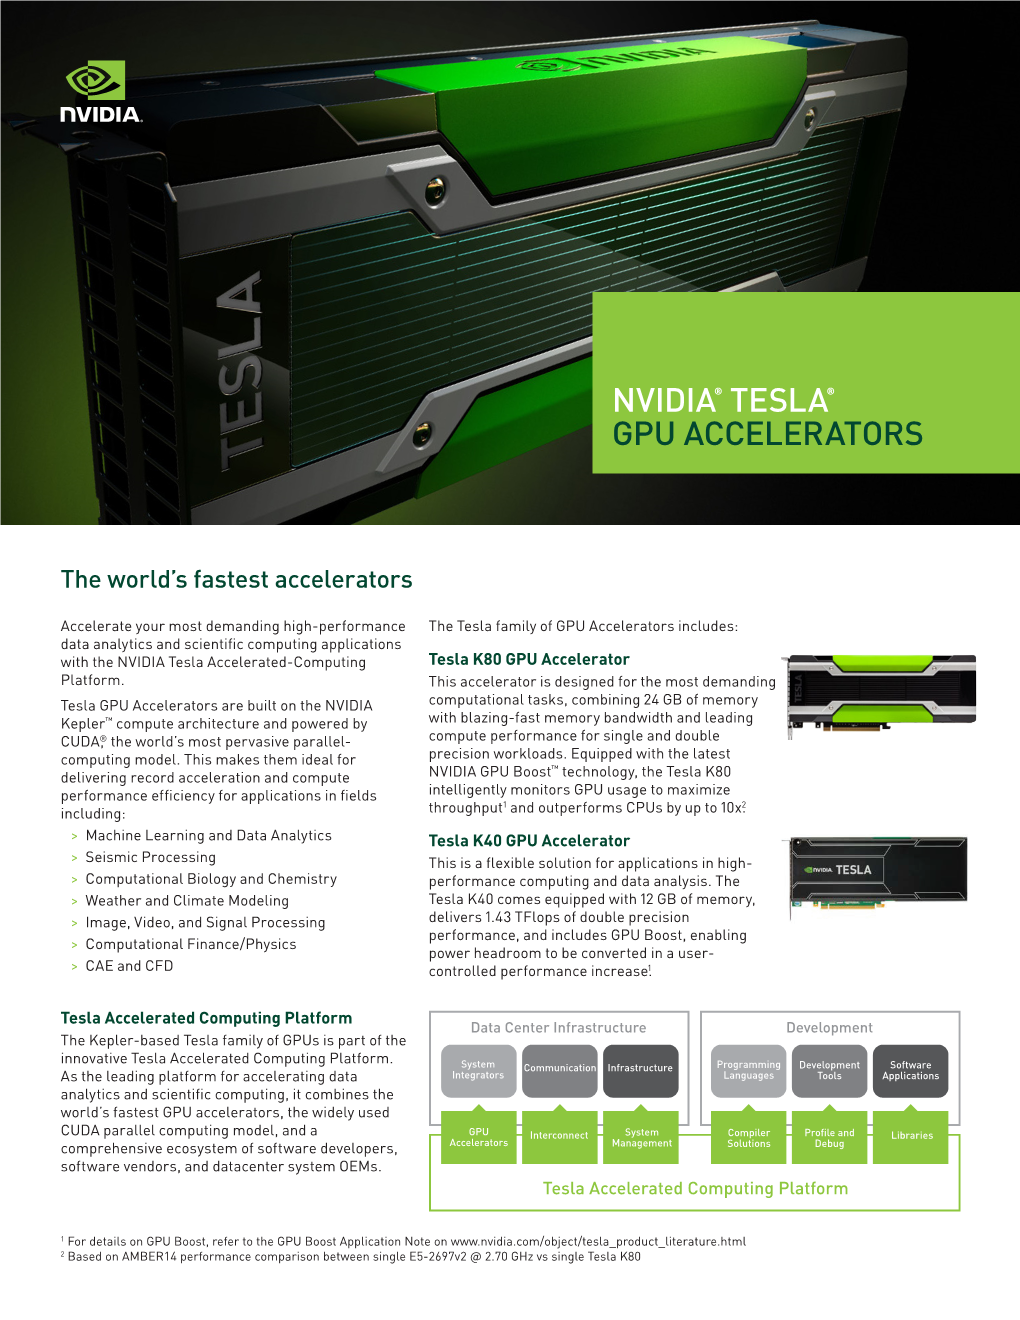 NVIDIA Tesla Accelerated-Computing Tesla K80 GPU Accelerator Platform